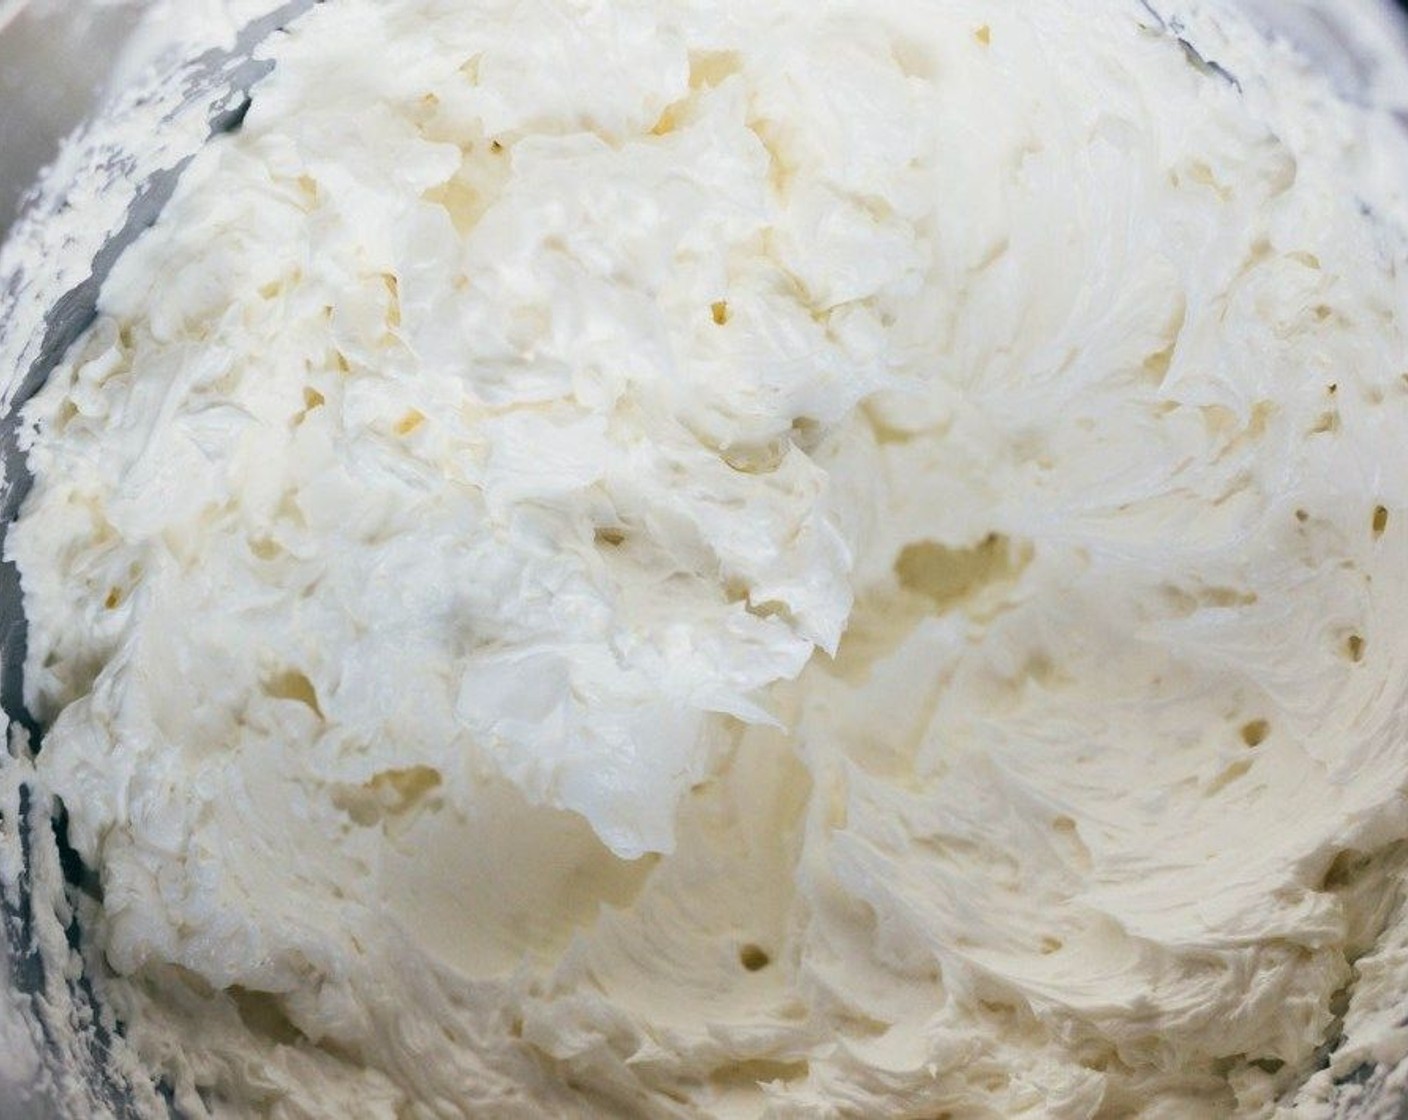 Schritt 5 Vanille (2 Teelöffel) esslöffelweise hinzugeben, während der Mixer auf niedriger/mittlerer Geschwindigkeit weiter läuft. Die Mischung wird sich zunächst verflüssigen und dann fester werden. Butter (4 Esslöffel) hinzugeben. Sobald die Butter vollständig eingearbeitet ist, noch 1 bis 2 Minuten auf höchster Stufe weiterrühren.